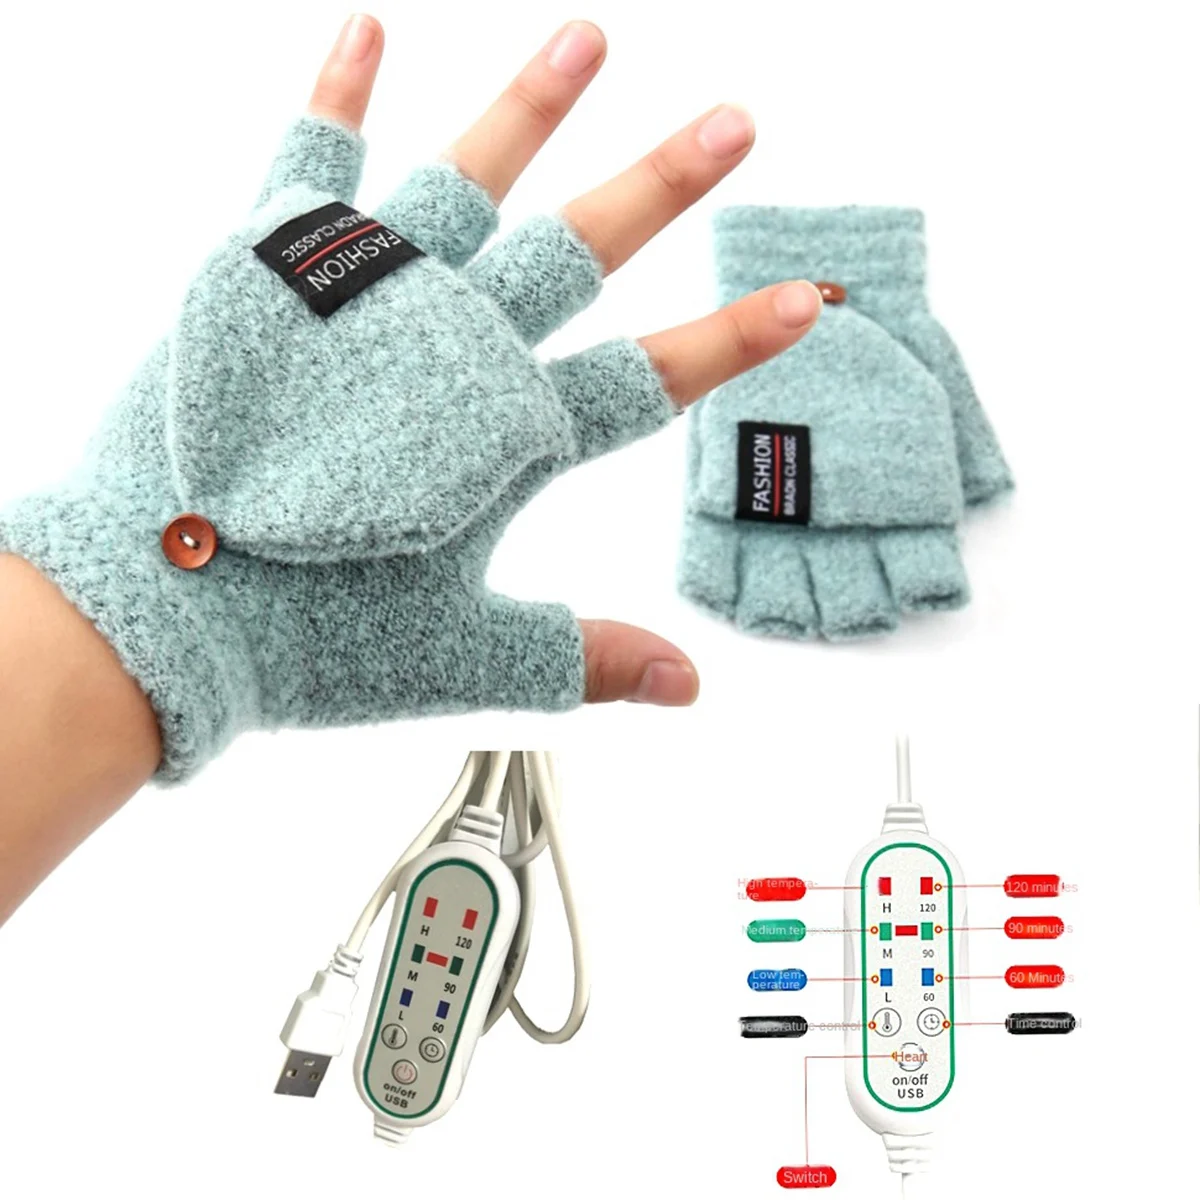 USB elektrikli ısıtmalı eldiven çift taraflı ısıtma eldivenleri şarj edilebilir su geçirmez ayarlanabilir sıcaklık, D